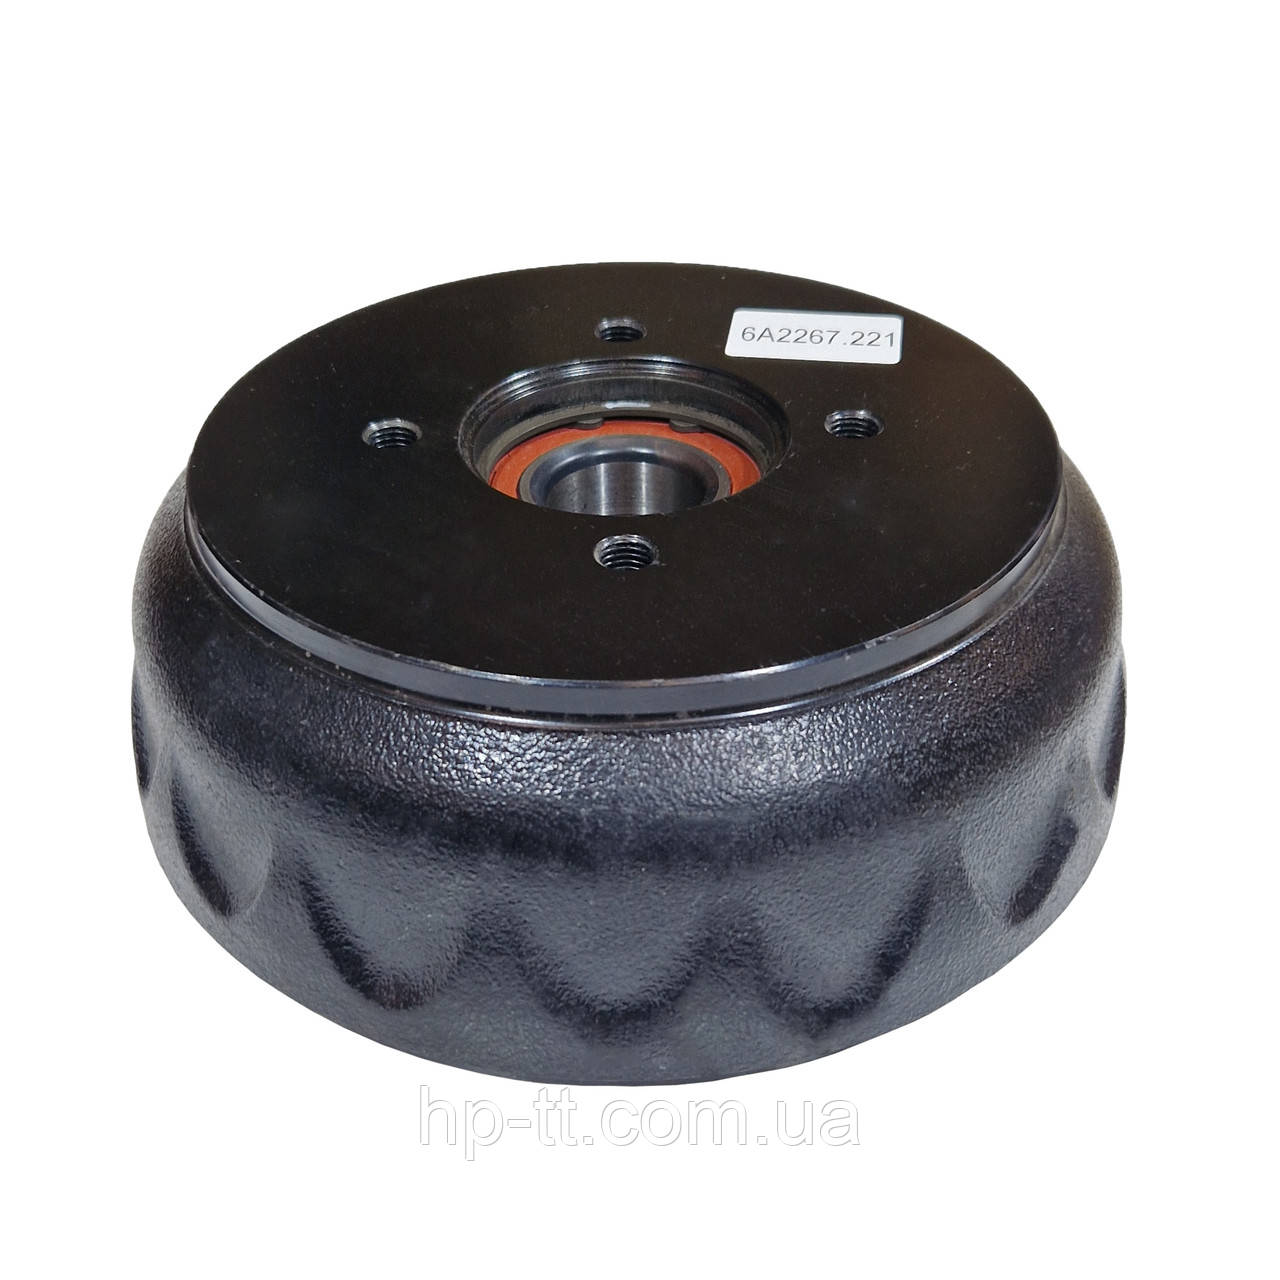 Гальмівний барабан Autoflex-Knott 6A2267.221 4x98 200x50 з підшипником 34/64x37 мм